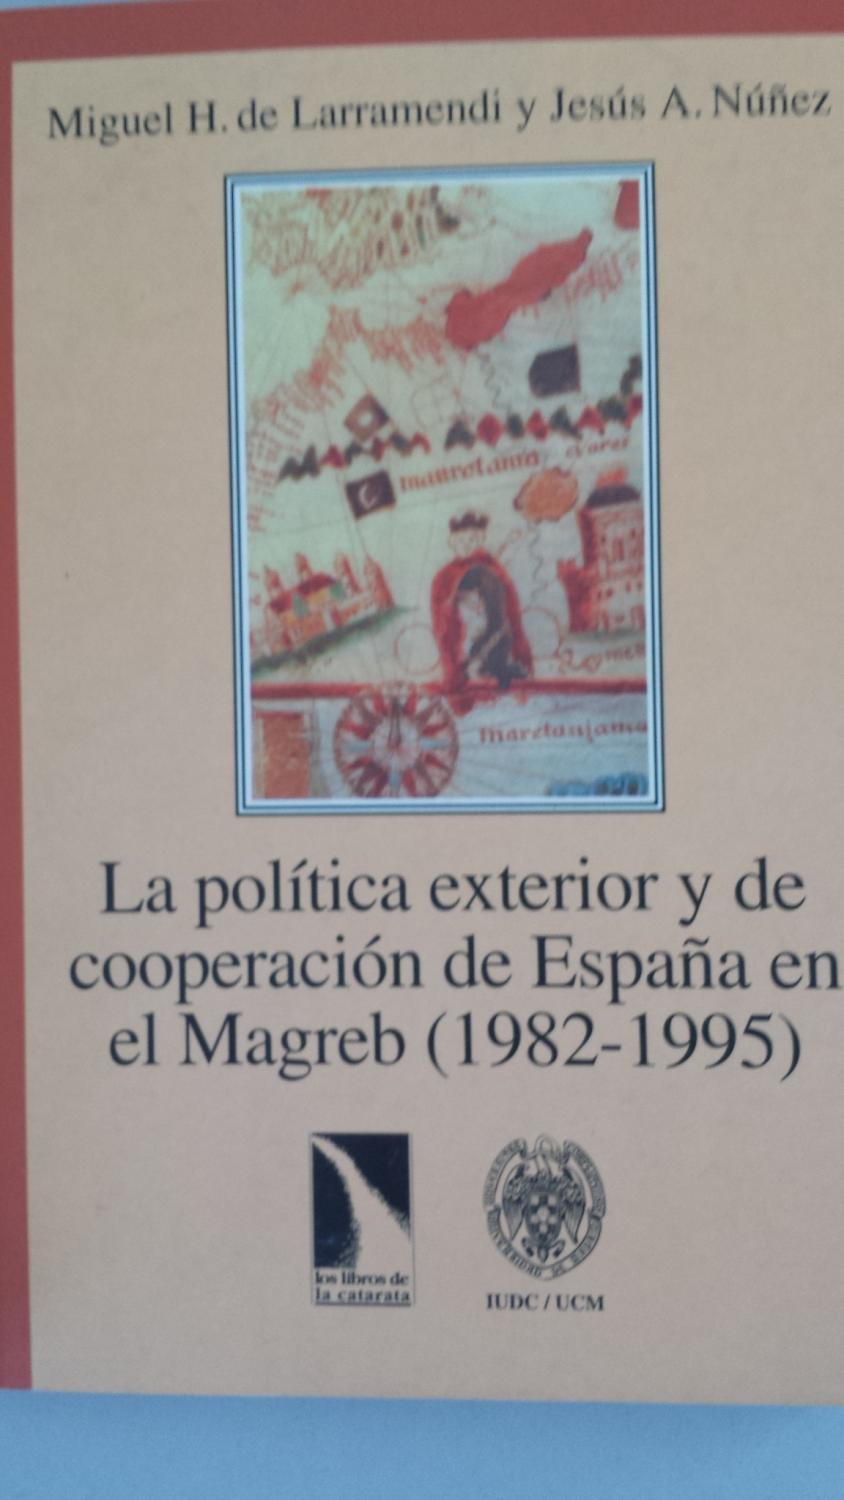 LA POLITICA EXTERIOR Y DE COOPERACION DE ESPAÑA EN EL MAGREB 1982-1995 - Miguel H. De Larramendi y Jesús A. Núñez